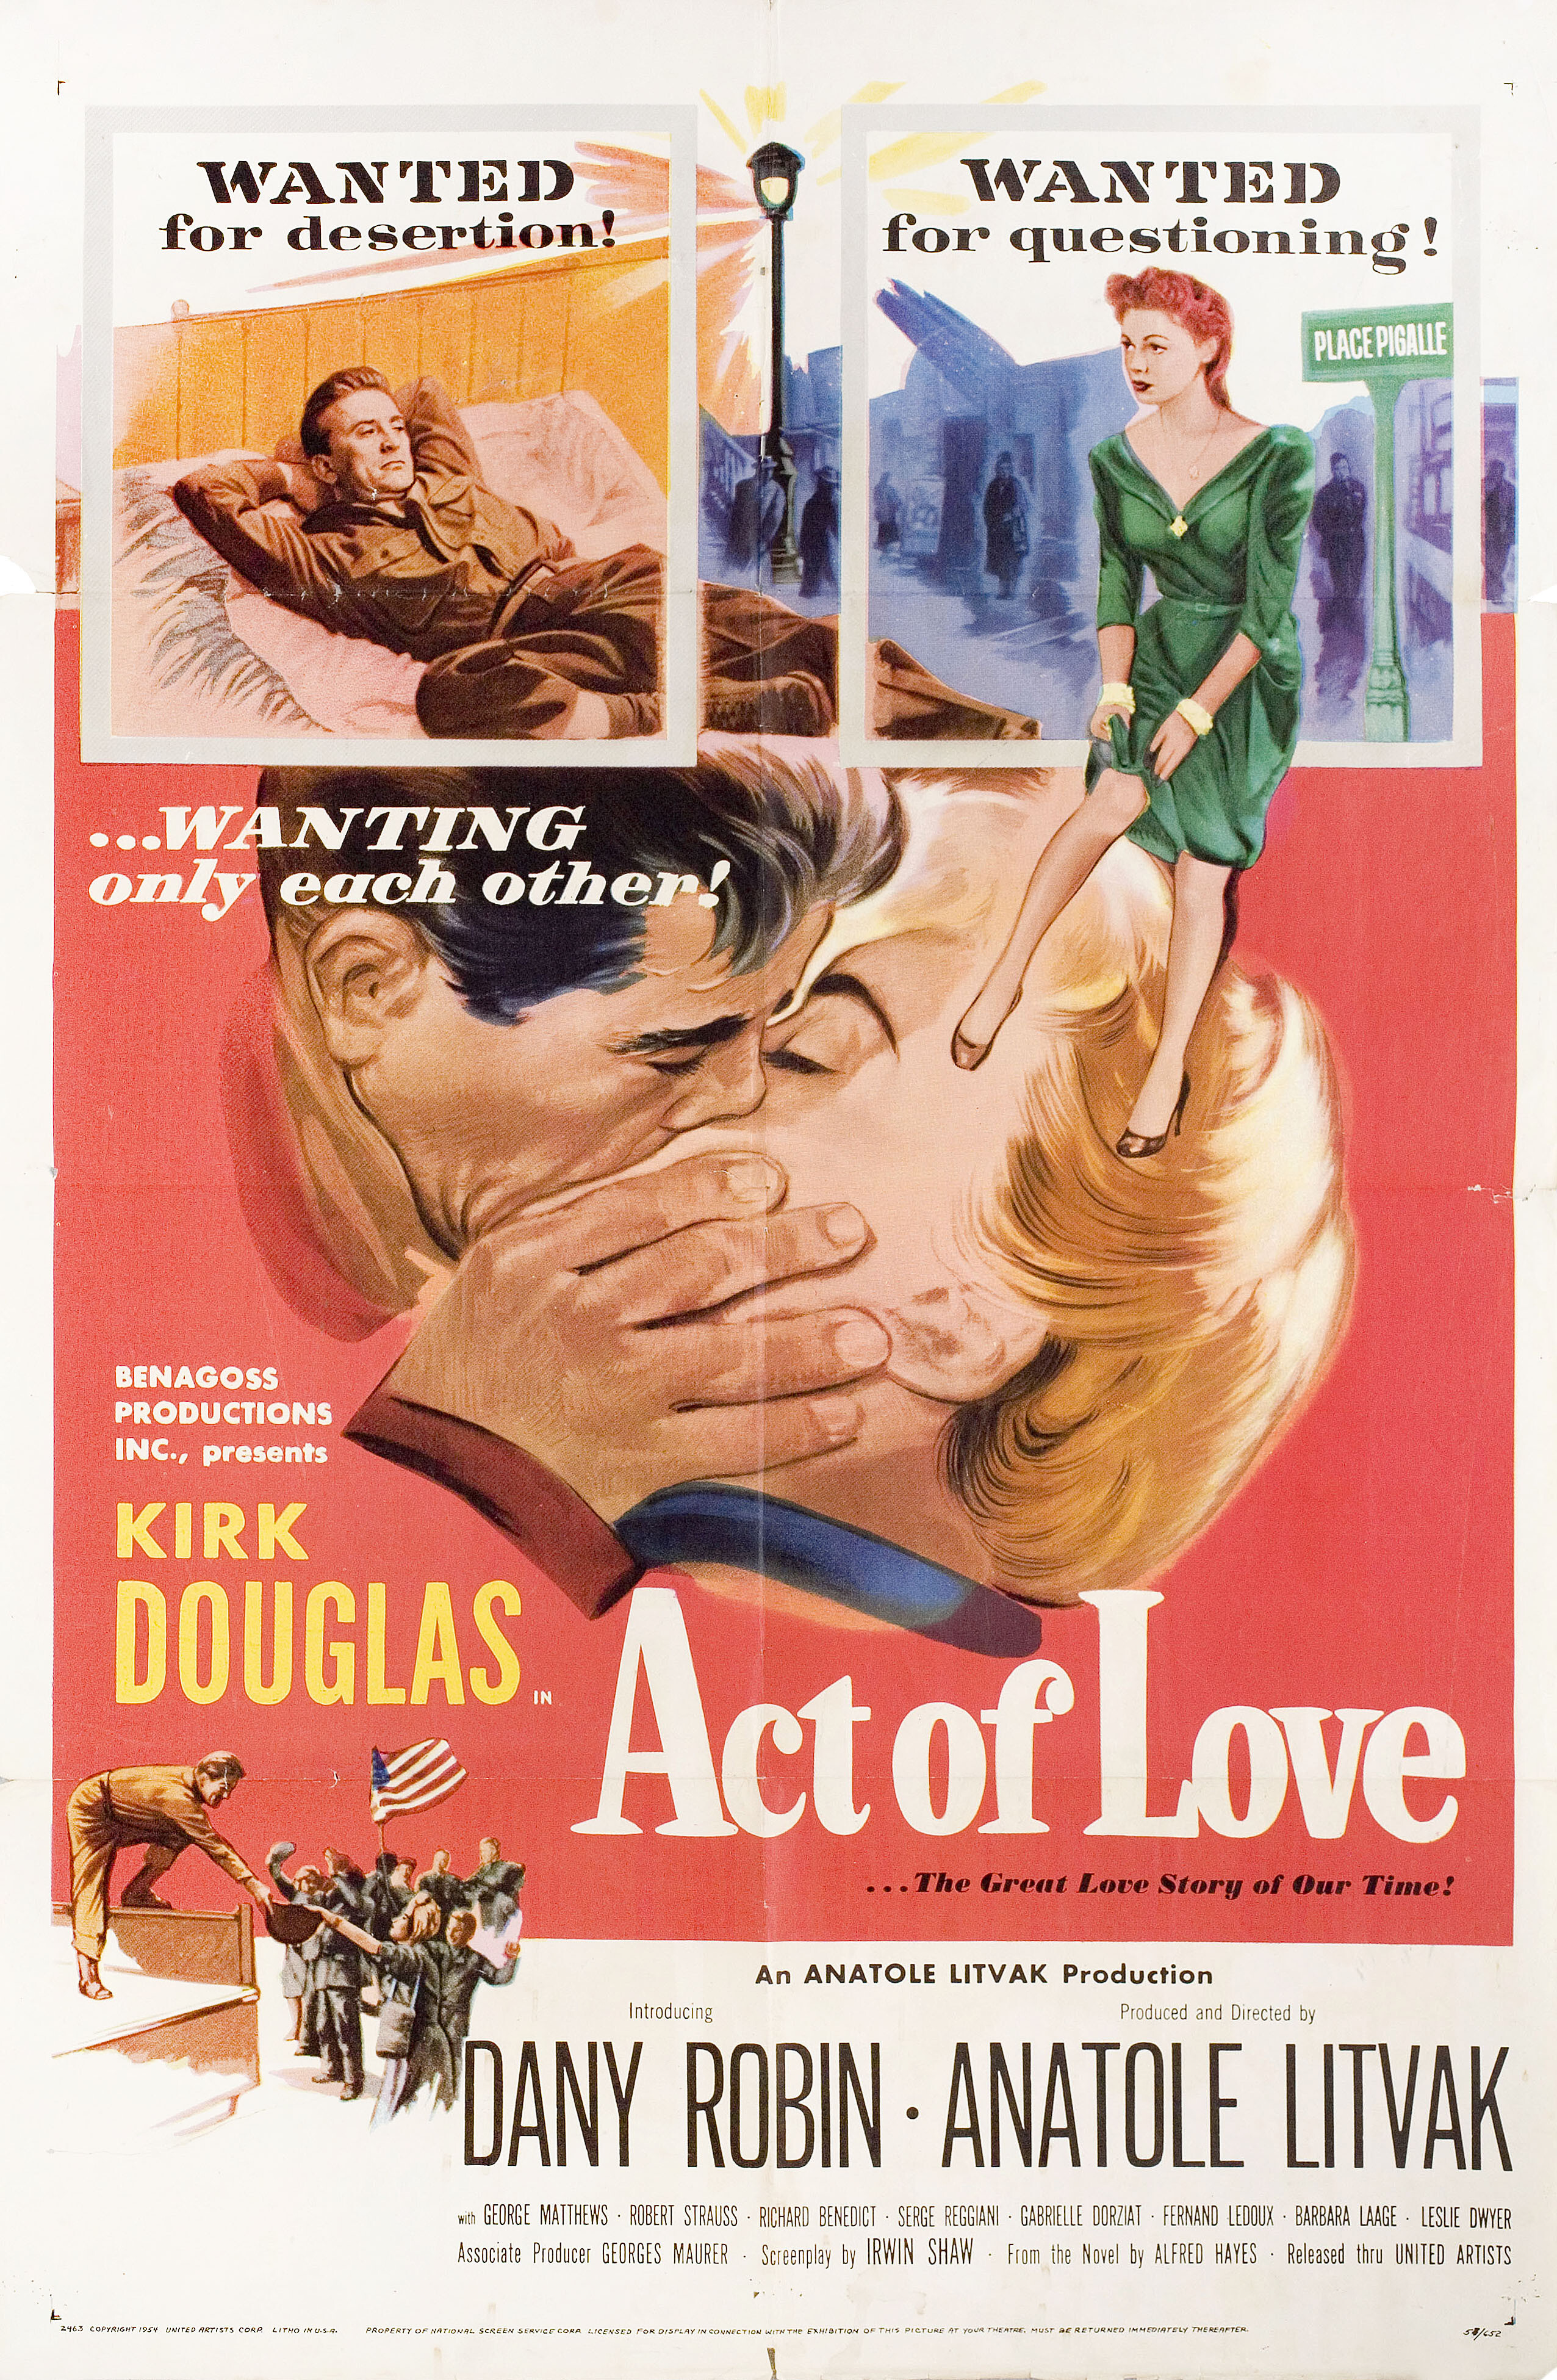 Акт любви (Act of Love, 1953), режиссёр Анатоль Литвак, художественный постер к фильму (США, 1953 год)